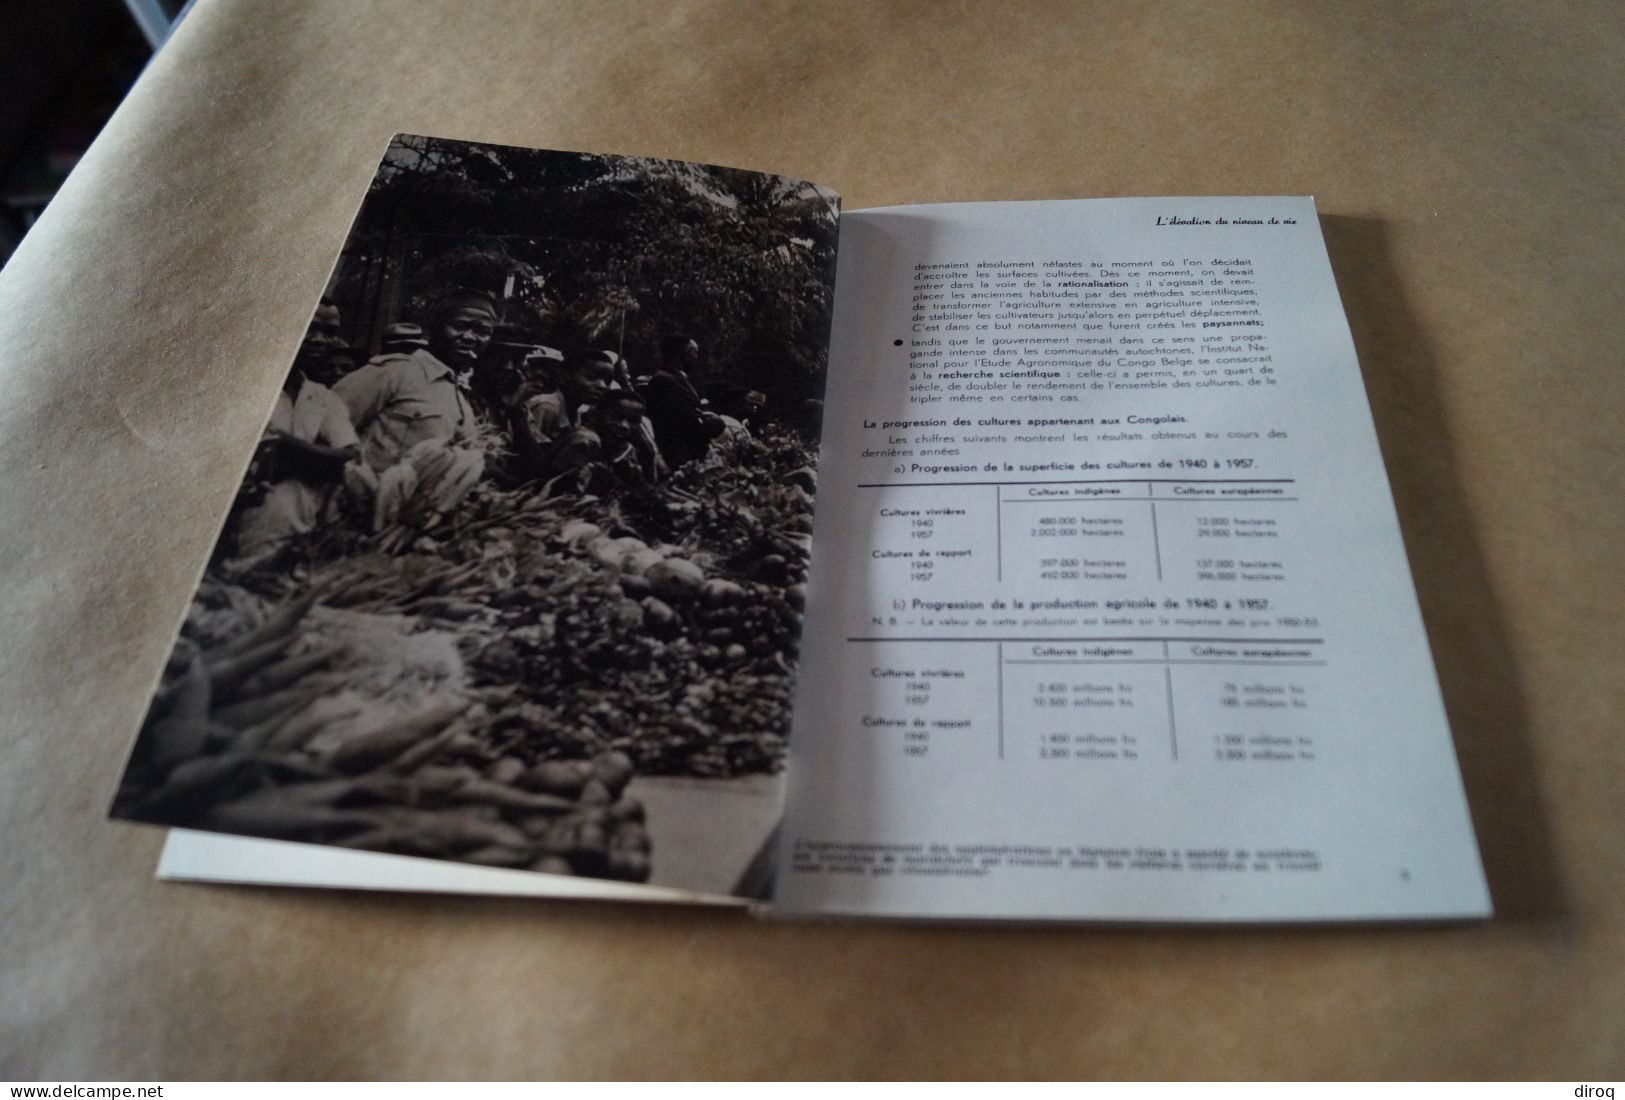 Congo Belge,1957, 13 Millions De Congolais,80 Pages,24 Cm. Sur 16 Cm. - Unclassified